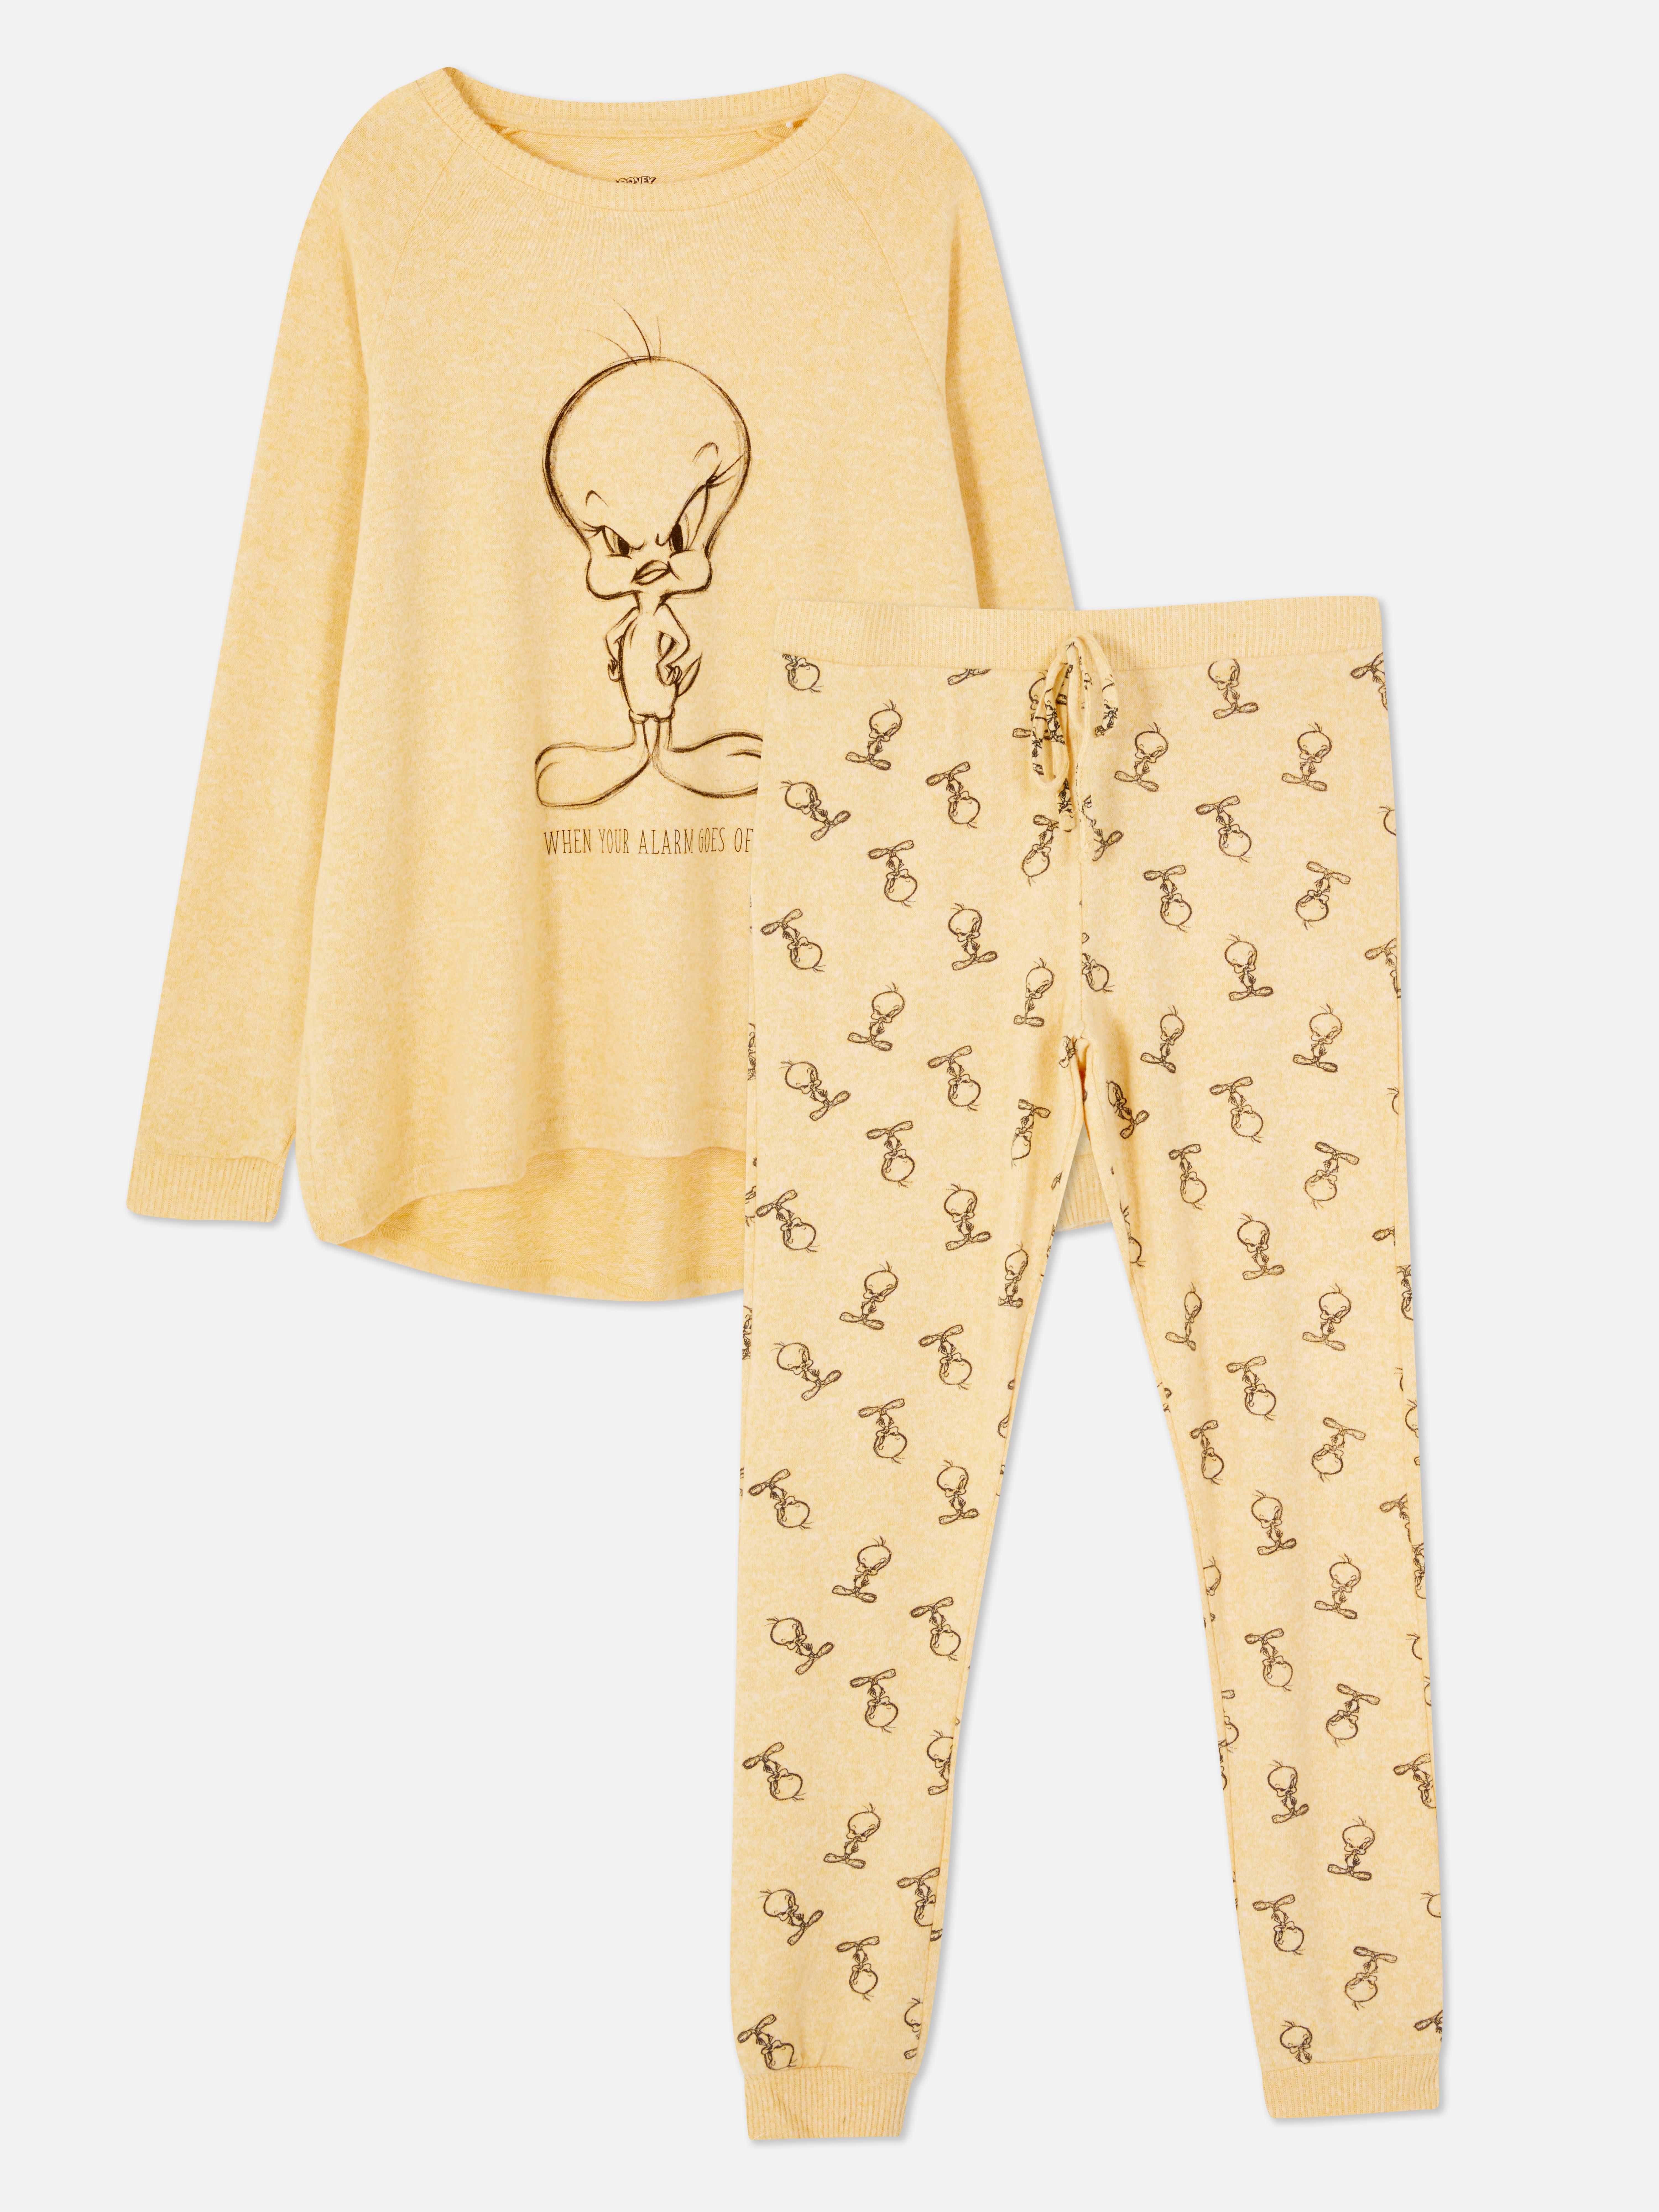 Tweety Bird Long Sleeve Pyjama Set